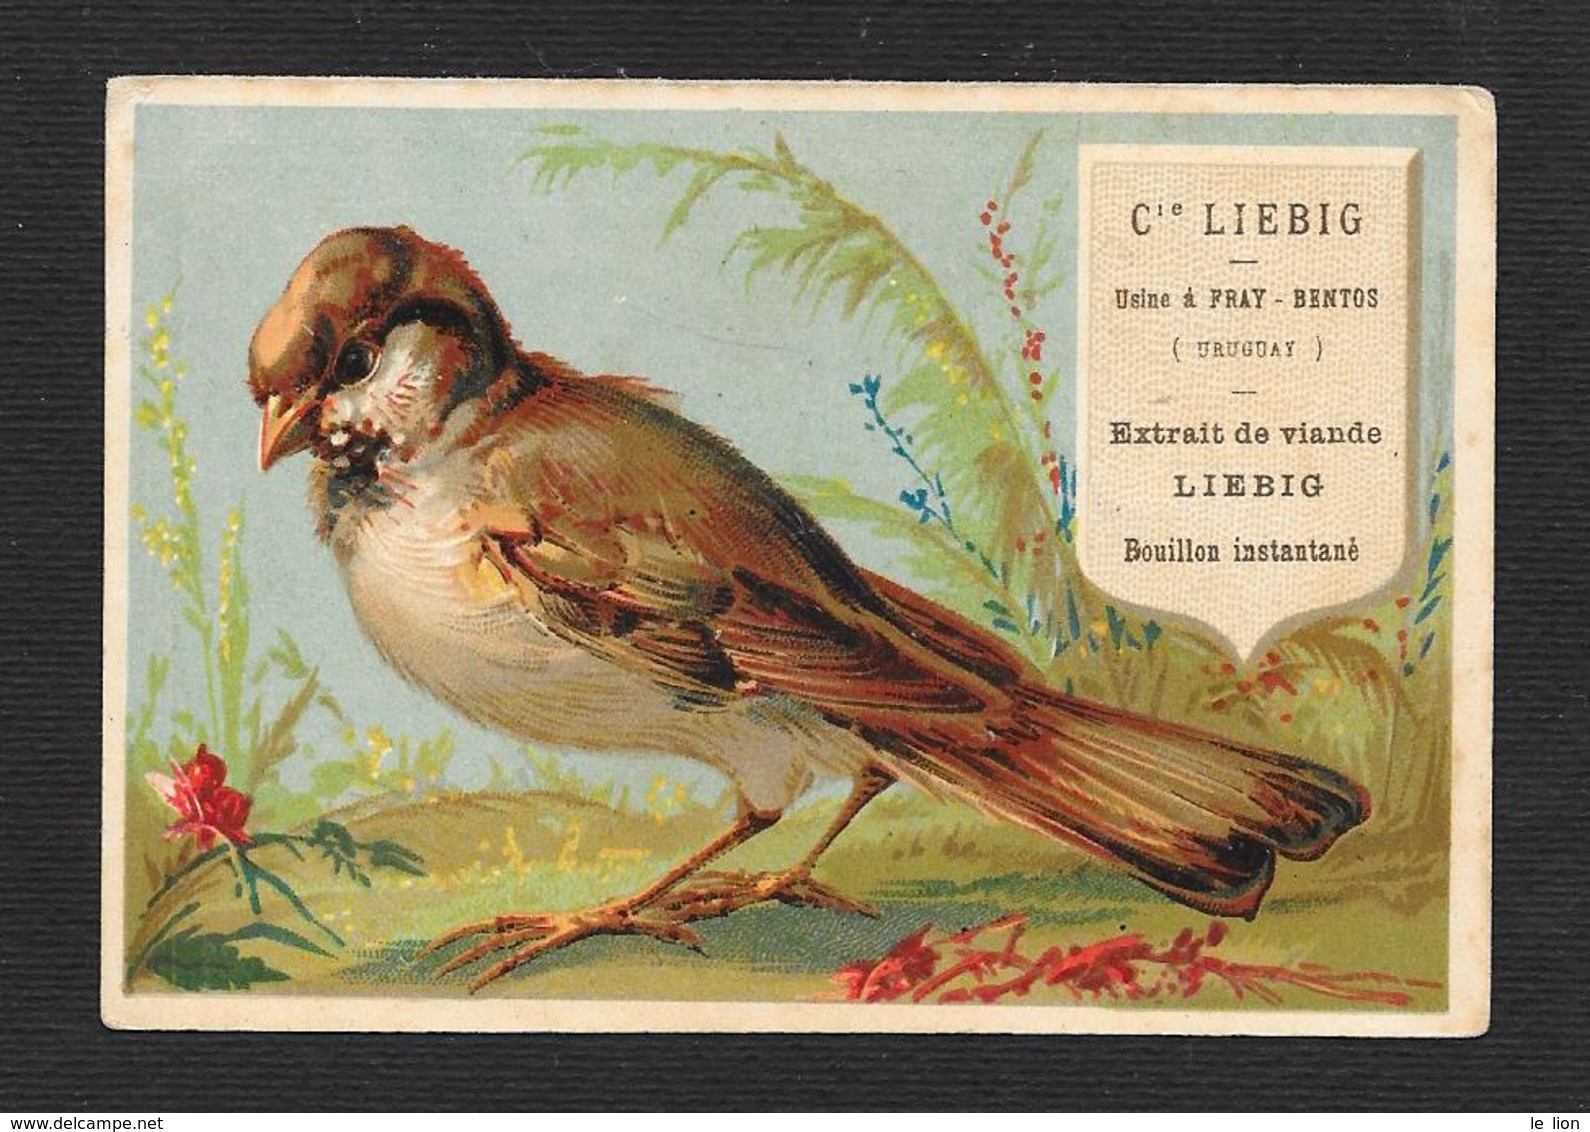 Chromo Liebig RARA S64 1a Edizione A-uccello Bruno Fiore Rosso  DANGIVILLE'- 1878 -OTTIMO STATO - Liebig